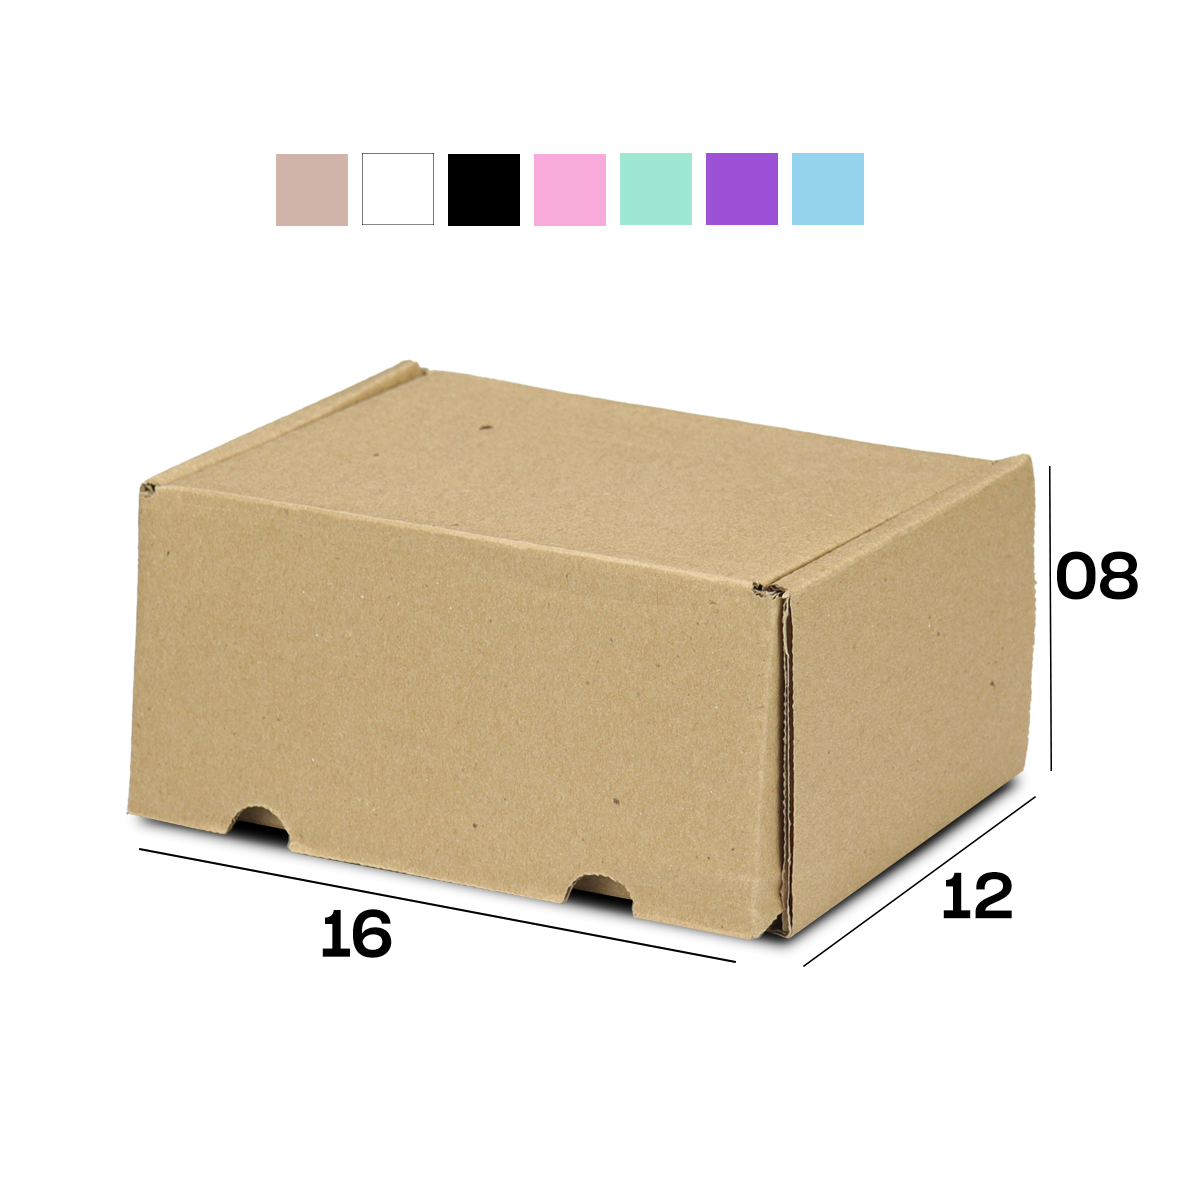 Caixa de Papelão Sedex 01 (16x12x08) Lisa